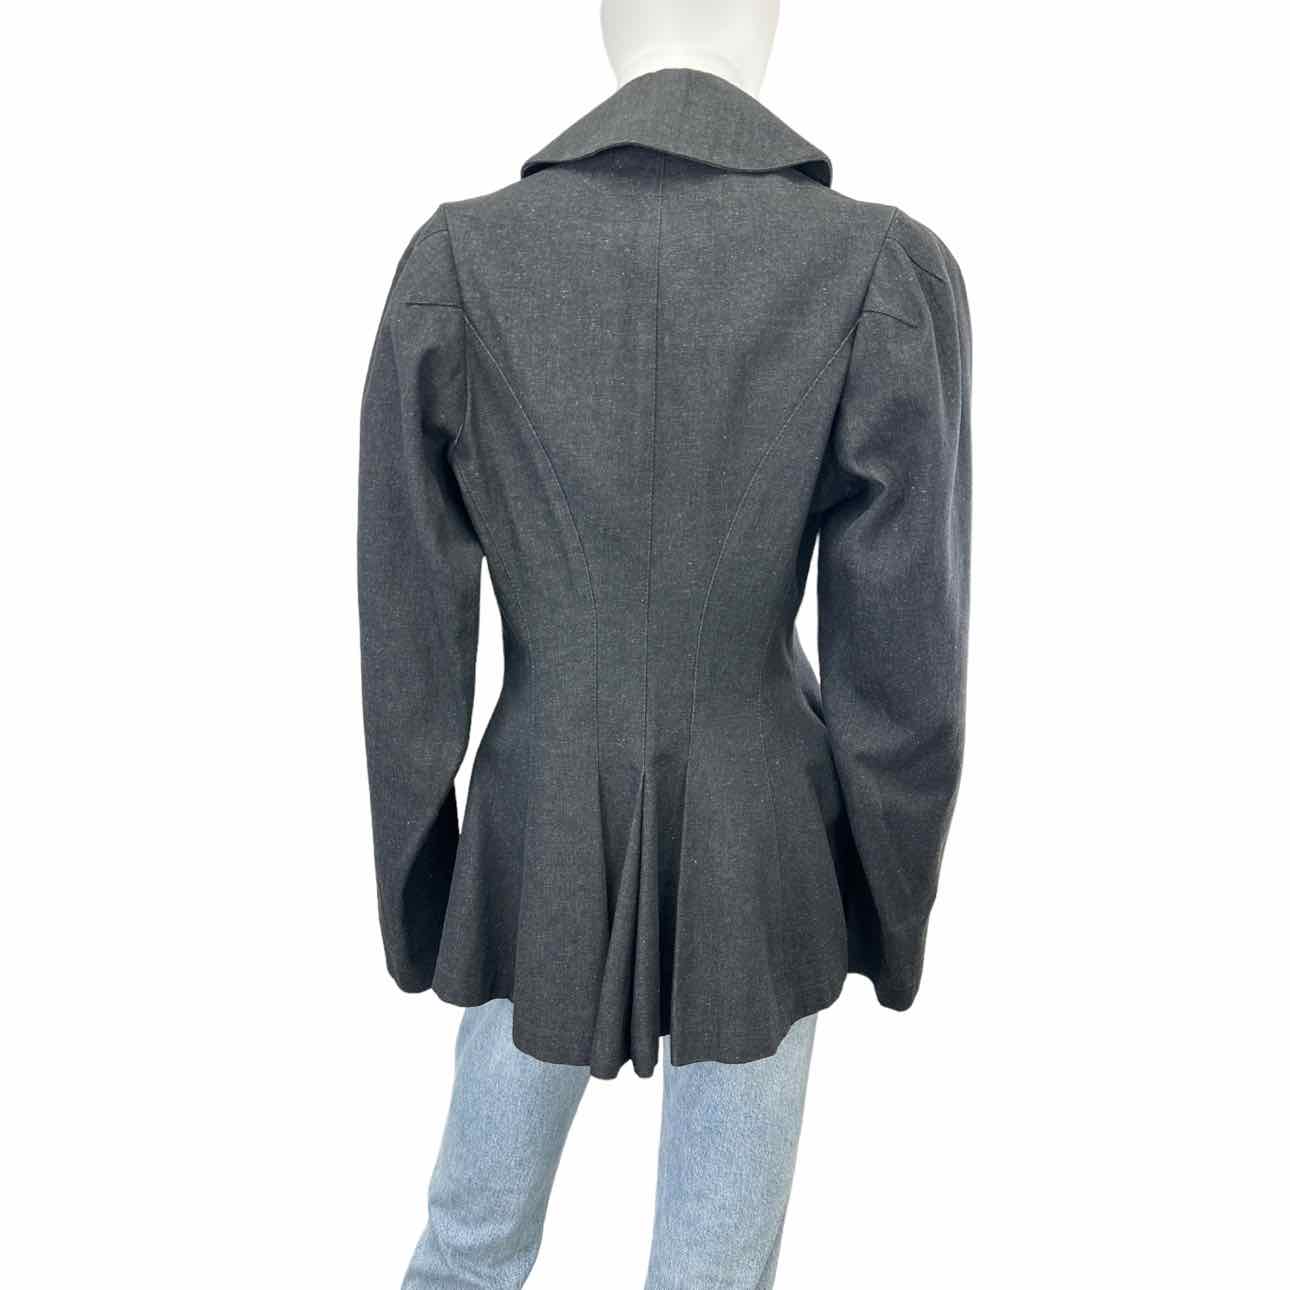 18008KAMALI Vintage Gray Jacket, peplum